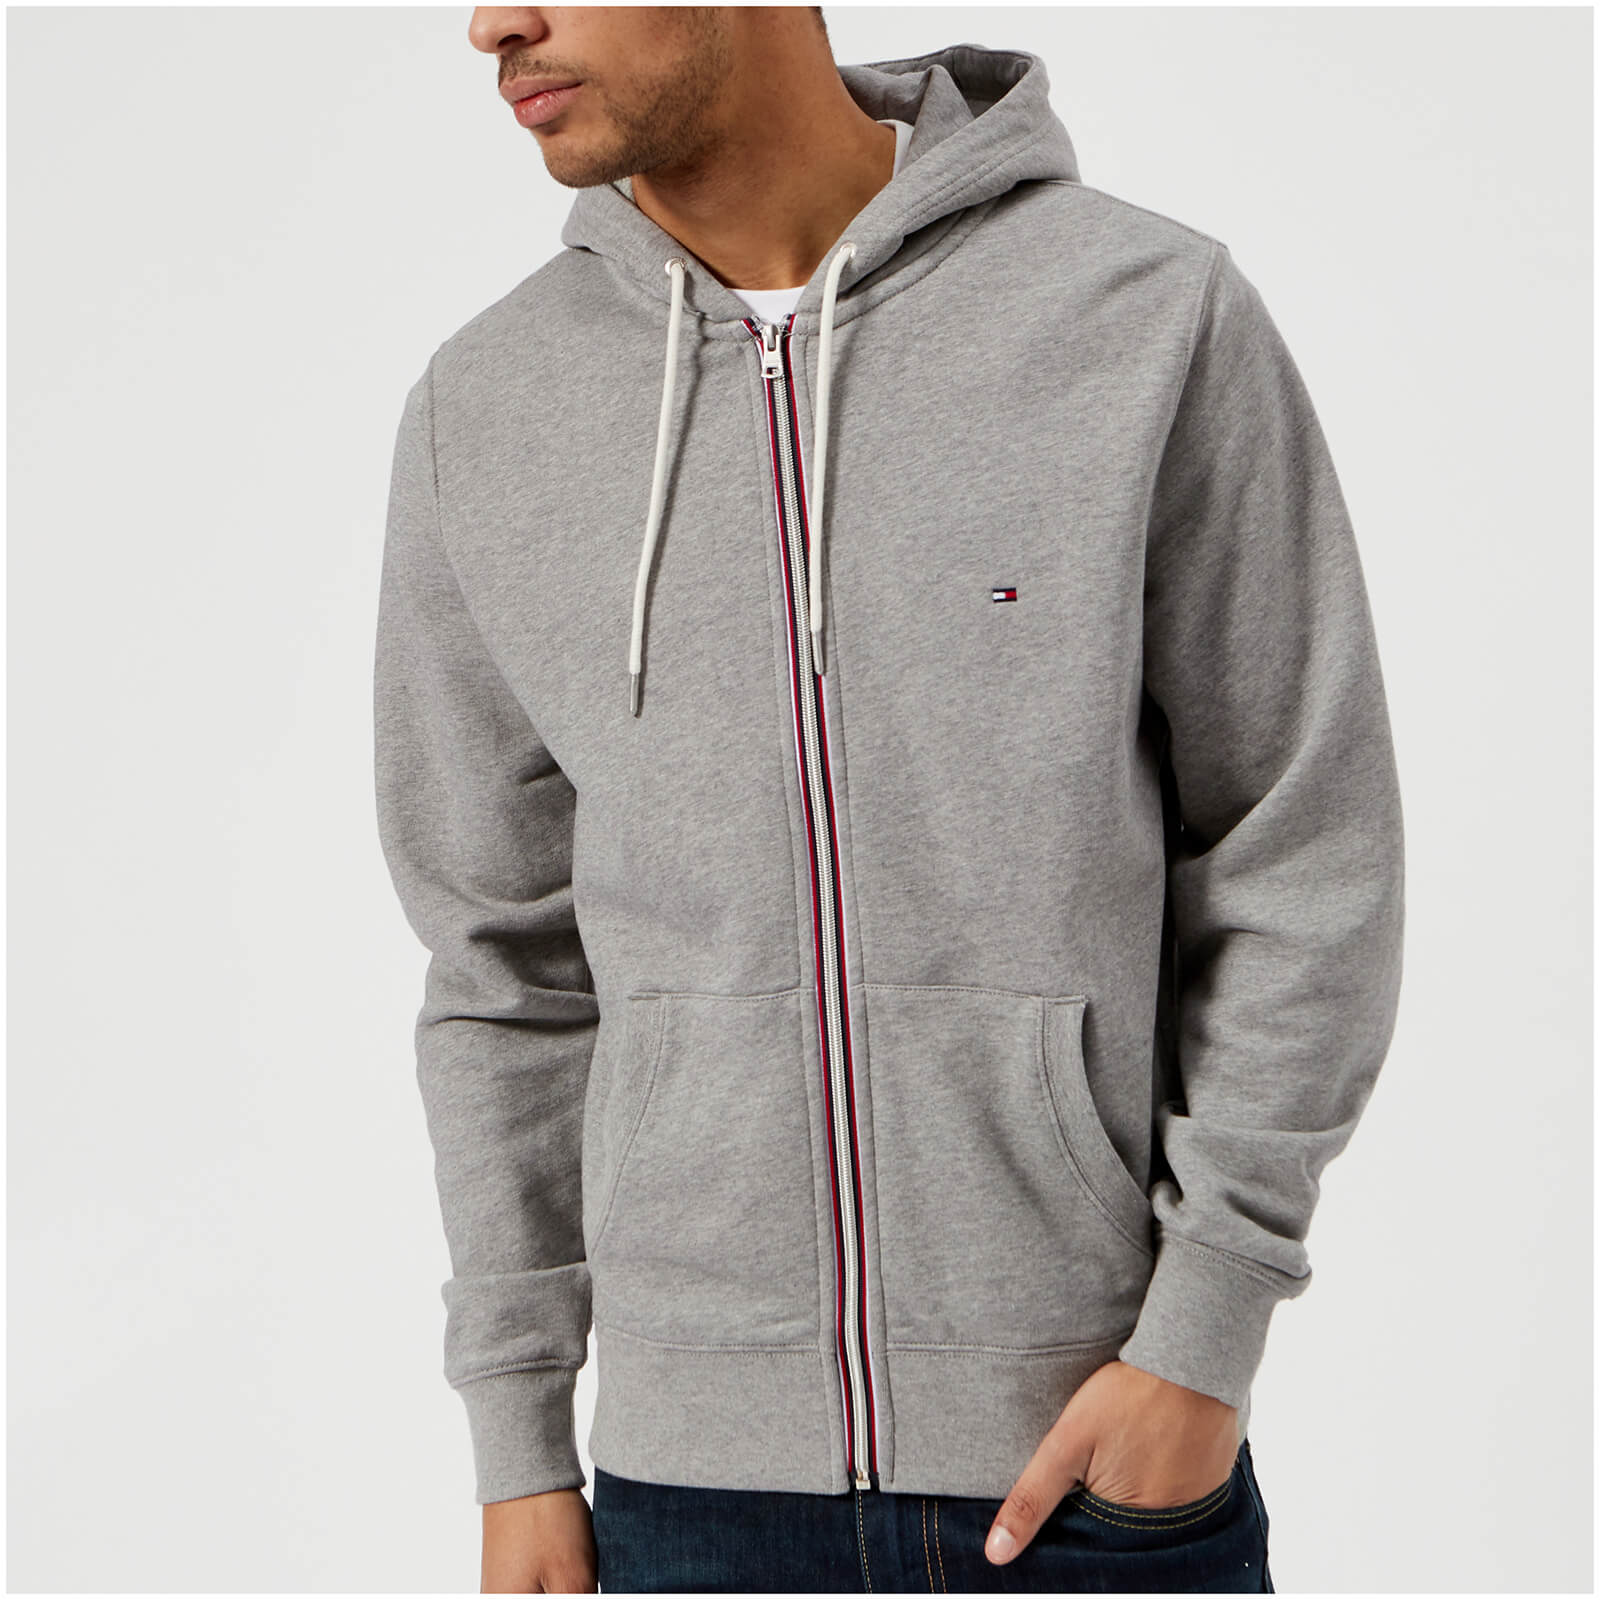 tommy hilfiger grey zip up hoodie